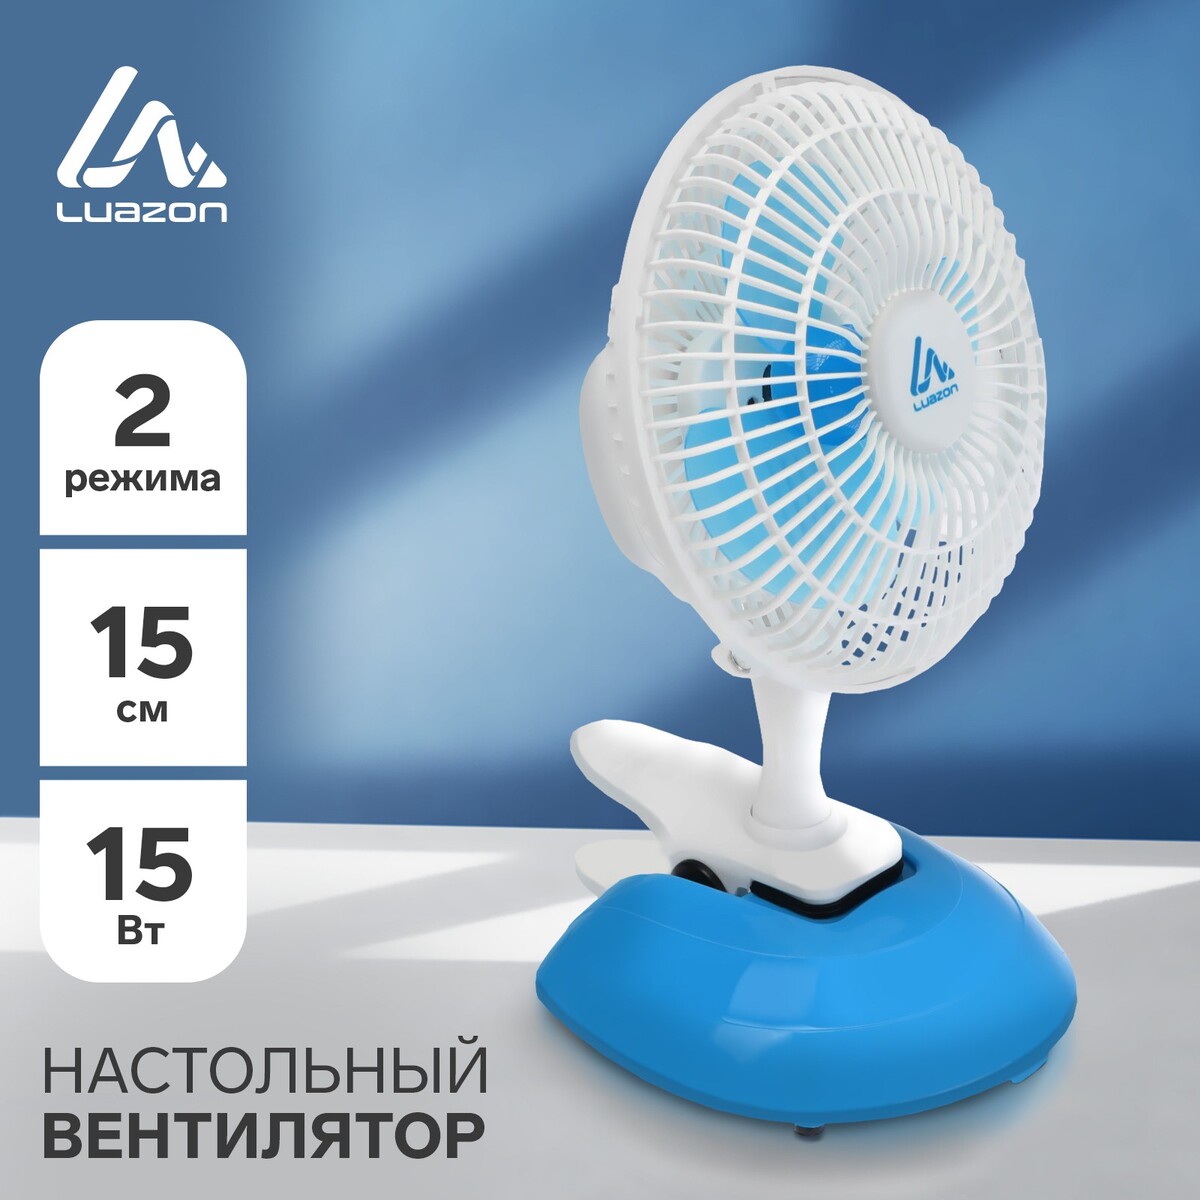 Вентилятор luazon lof-04, настольный, 15 вт, 15 см, 2 режима, пластик, бело-голубой вентилятор для корпуса deepcool tf120s